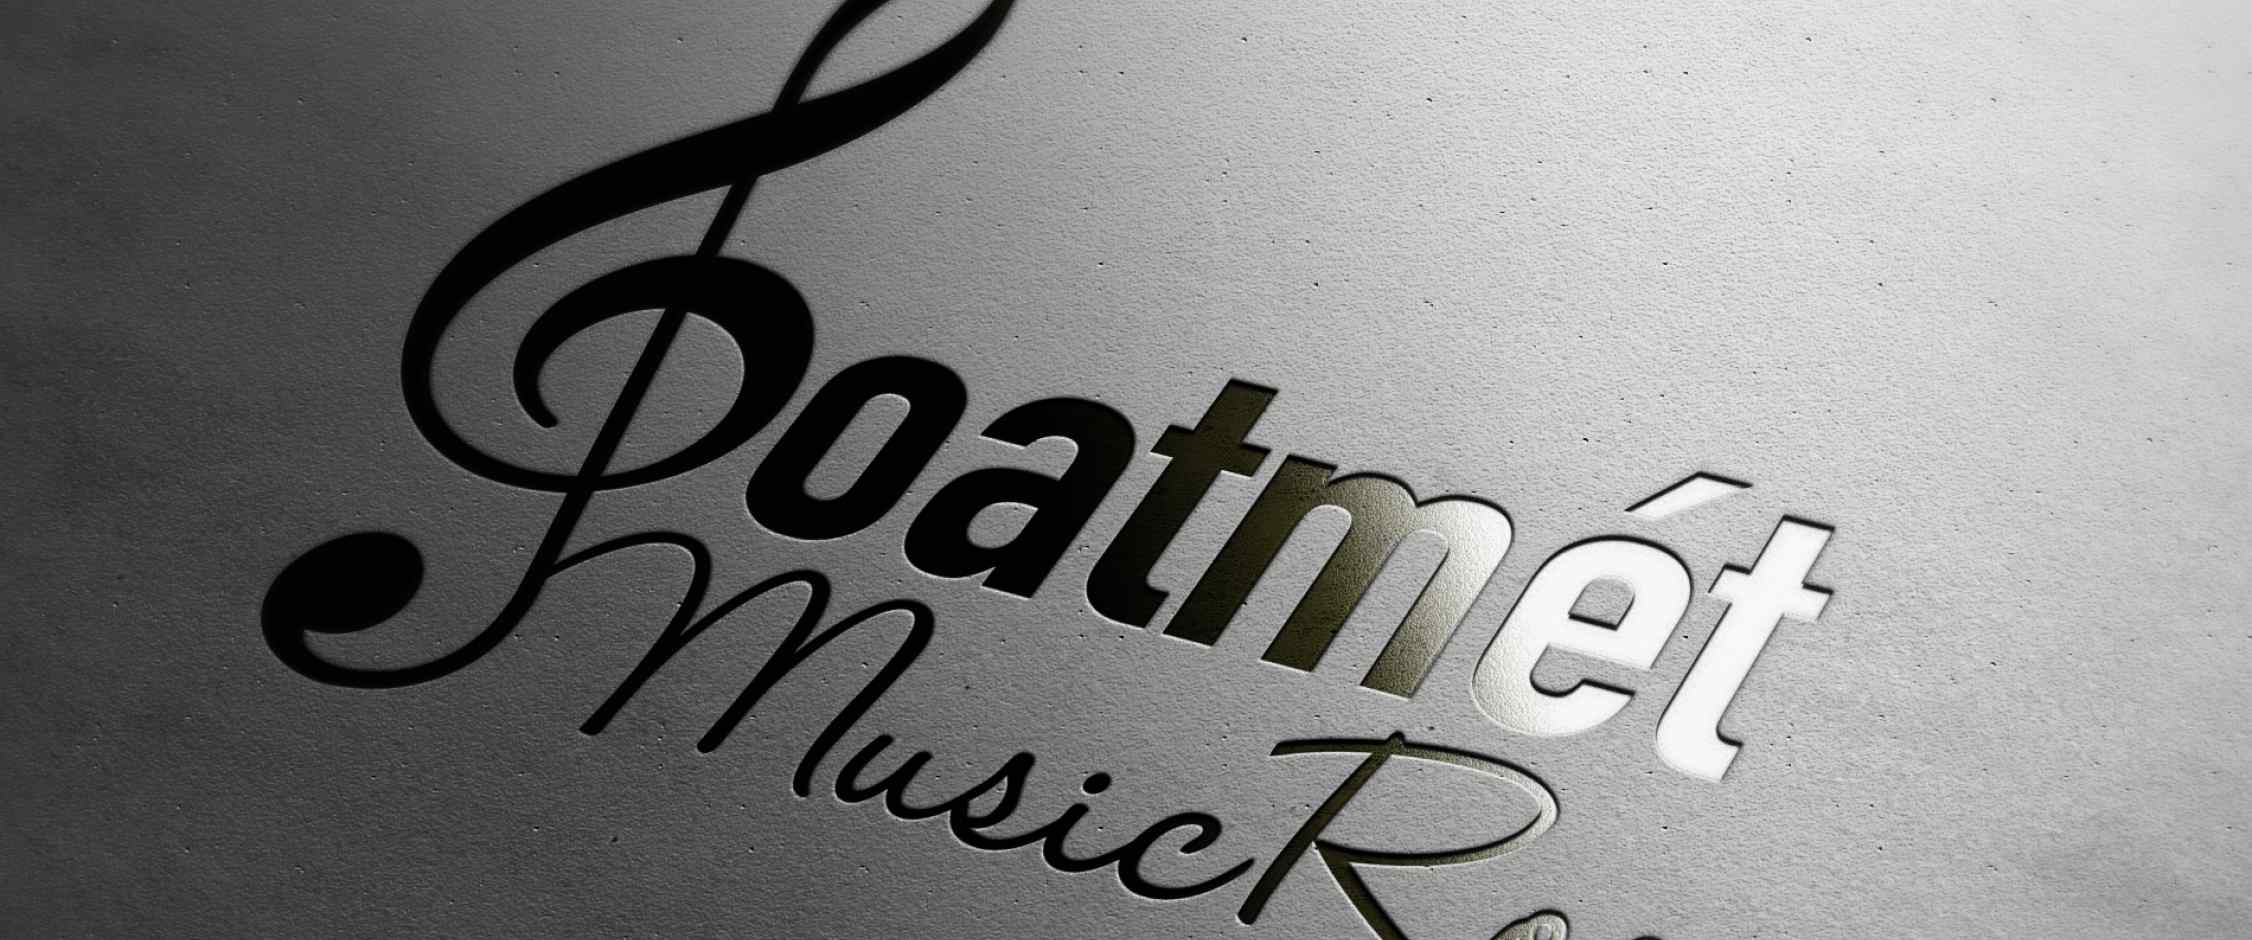 Goatmét Music Room logó